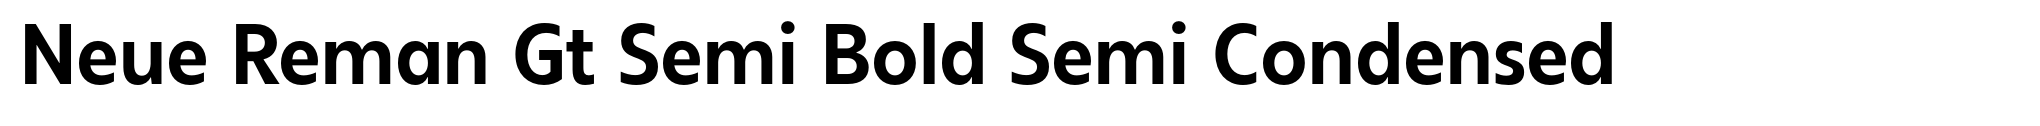 Neue Reman Gt Semi Bold Semi Condensed image